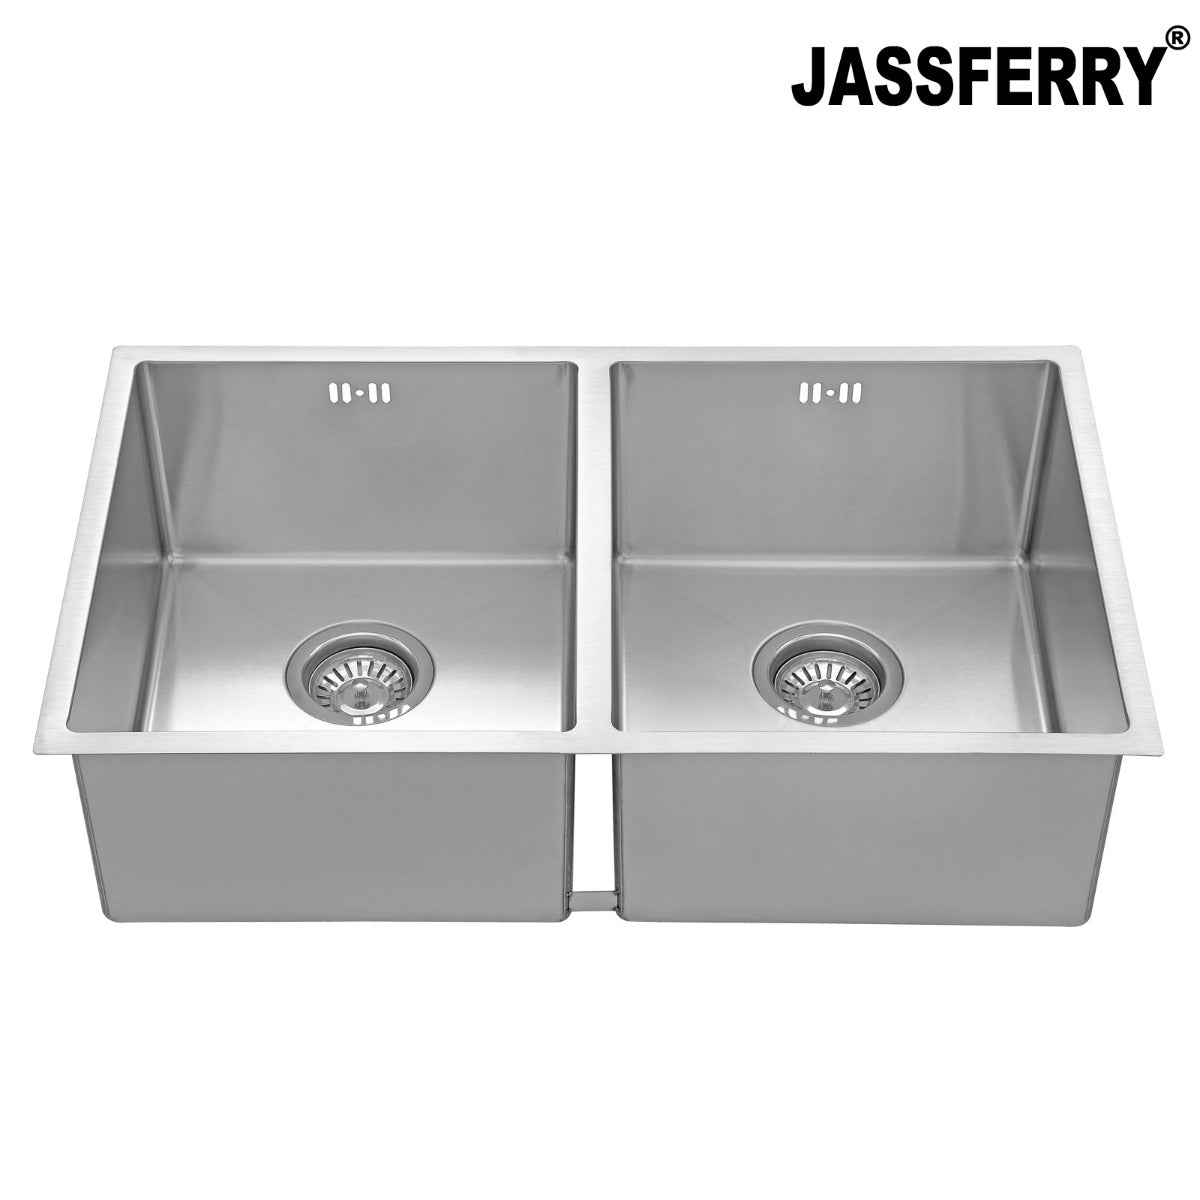 JassferryJASSFERRY Undermount Stainless Steel Kitchen Sink Handcrafted Double BowlKitchen Sinks